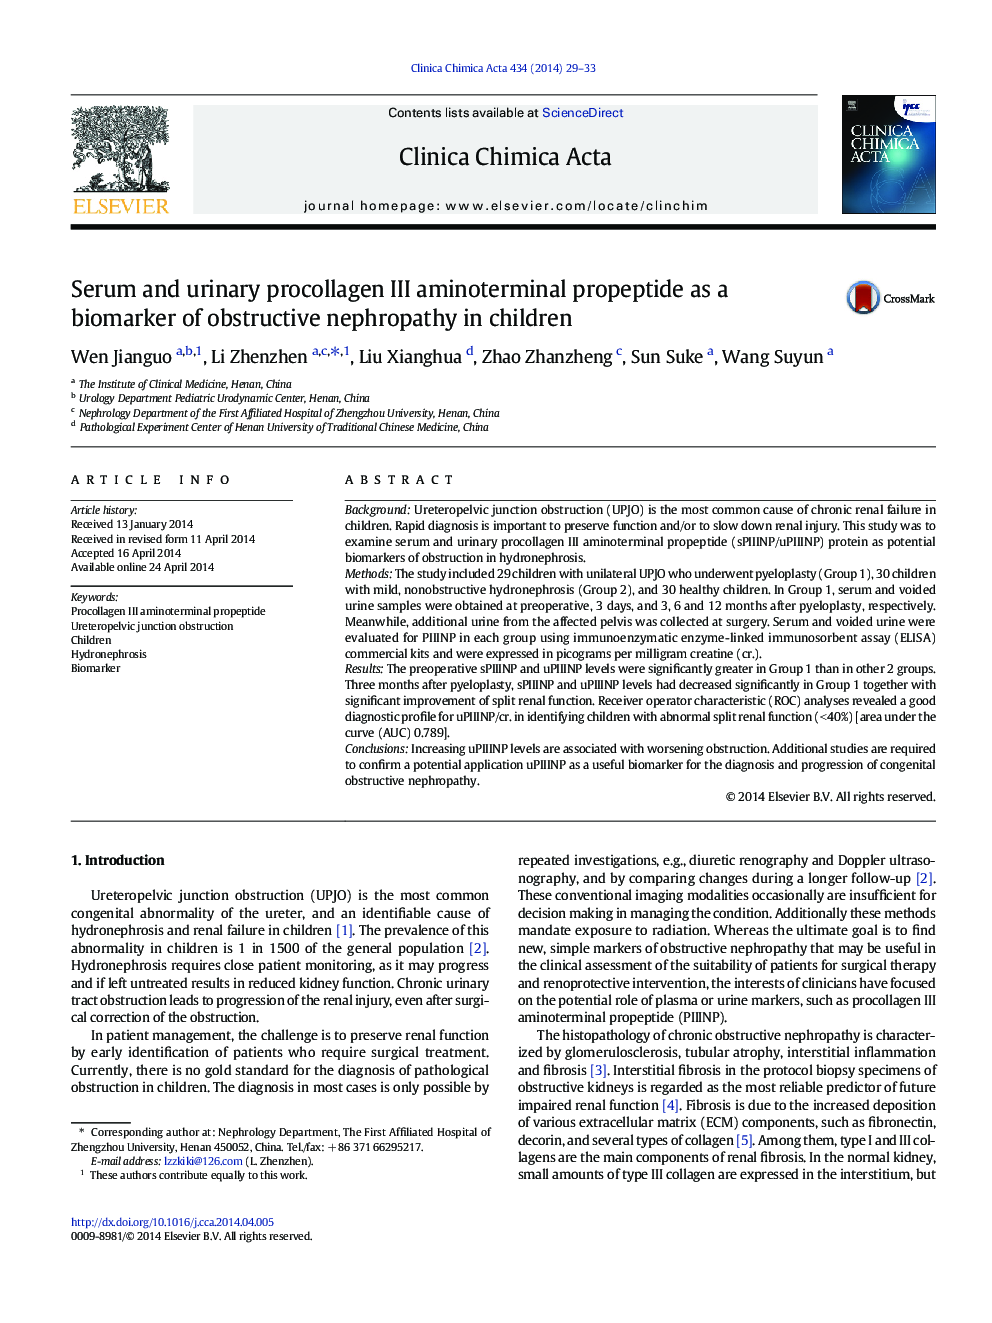 پروپپتید آمینوترامین پرولاژان سرم و پروتئین ادراری به عنوان نشانگر بیوماراسیون نفروپاتی انسدادی در کودکان 